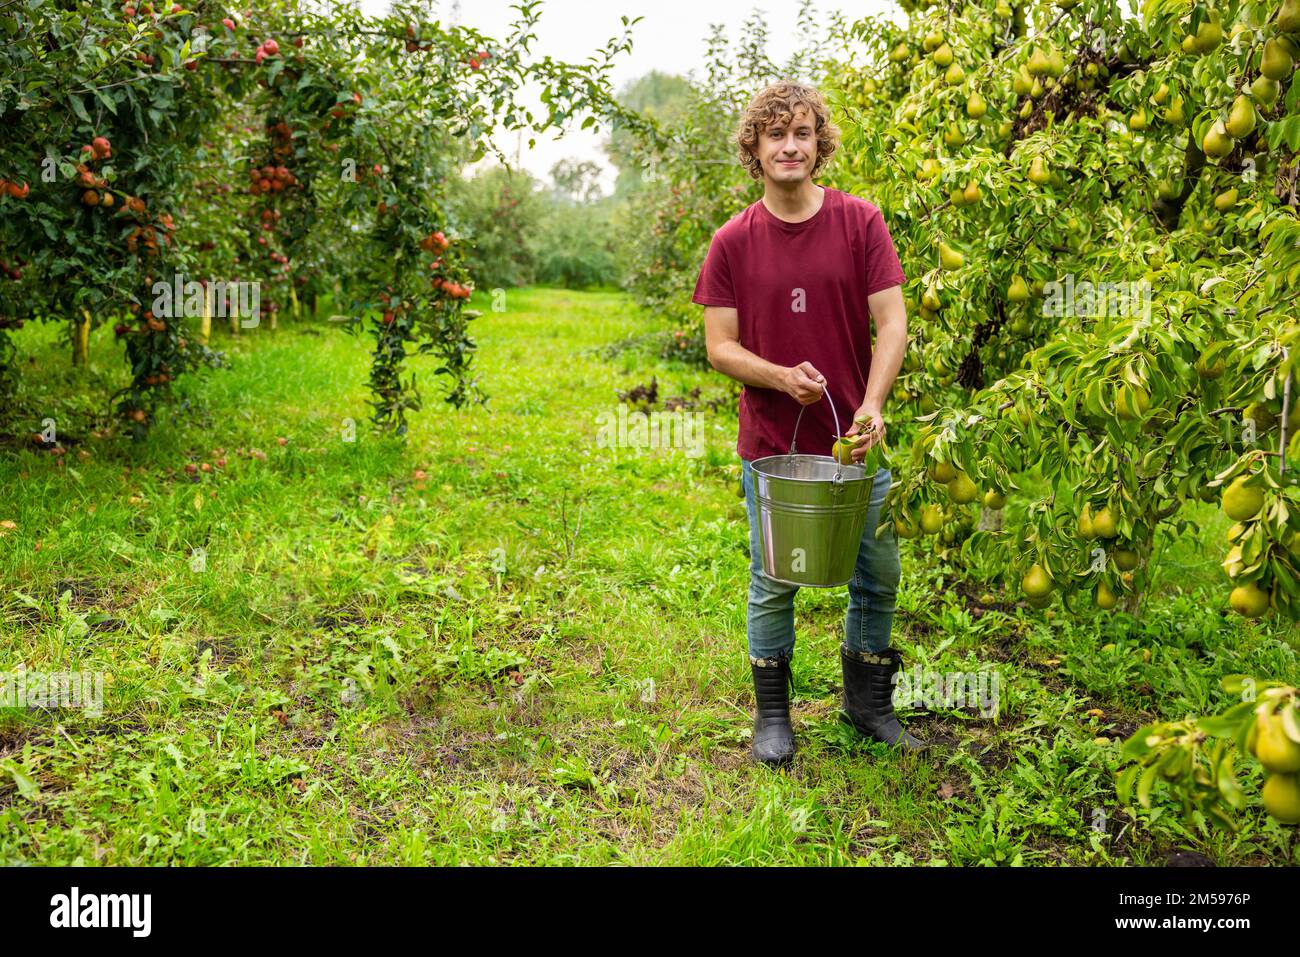 Ich freu mich, dass der Gärtner im Obstgarten Obst pflückt Stockfoto